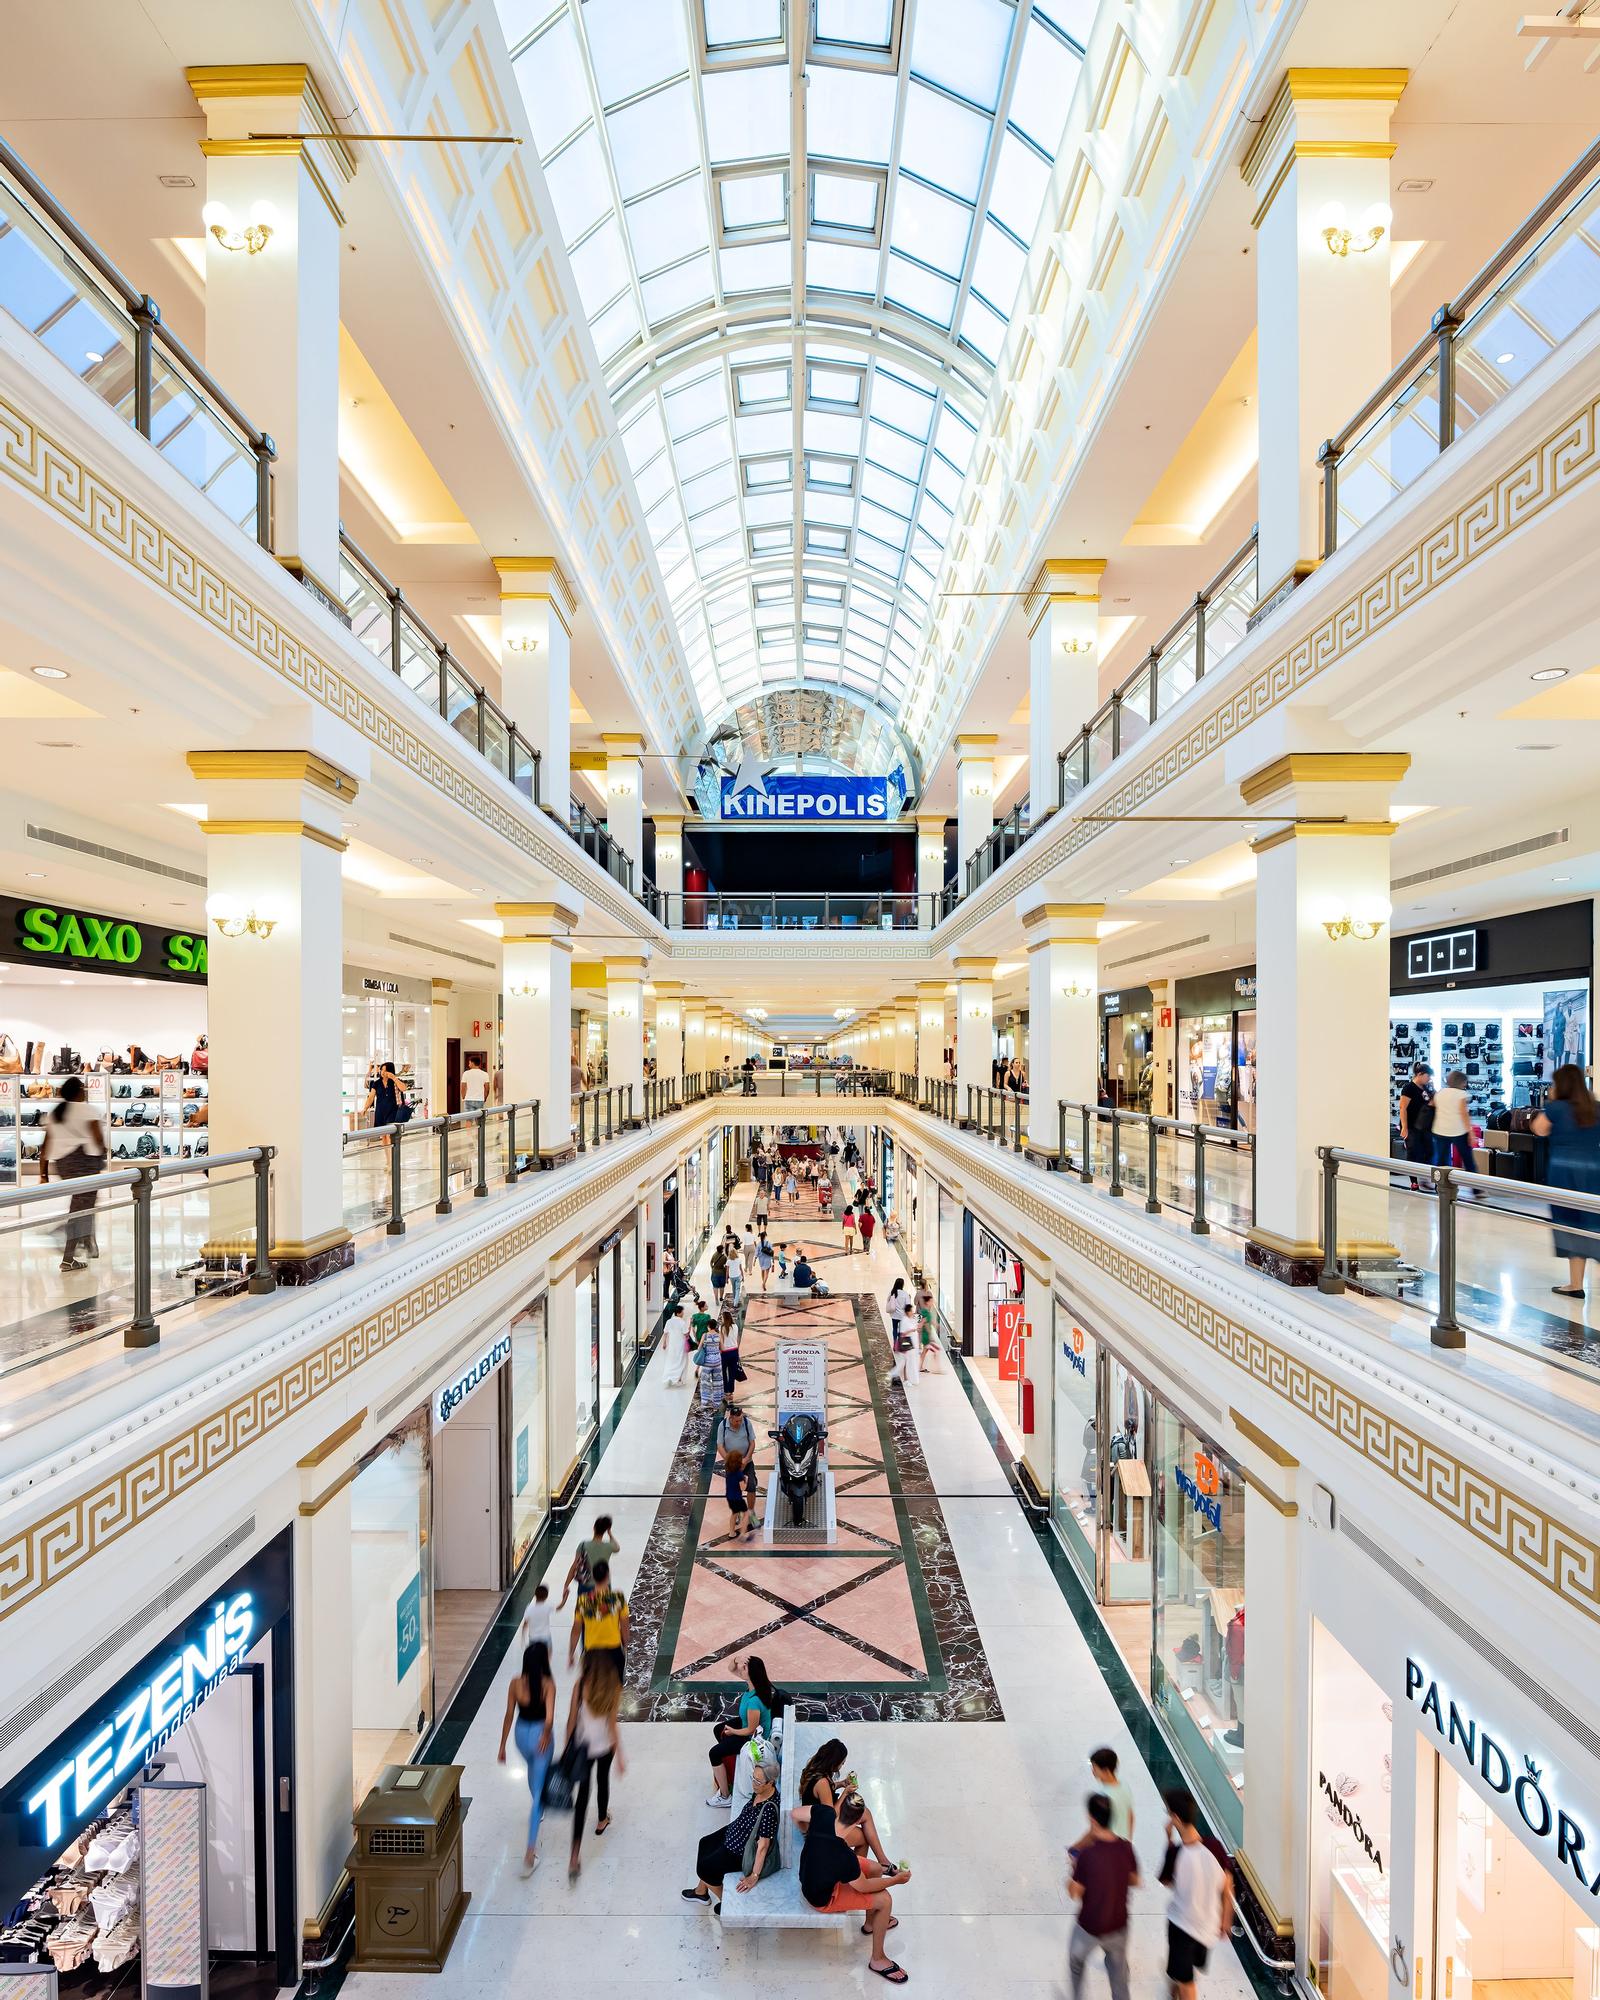 En sus 20 años el centro comercial ha evolucionado adaptándose con éxito a las nuevas demandas de los consumidores: